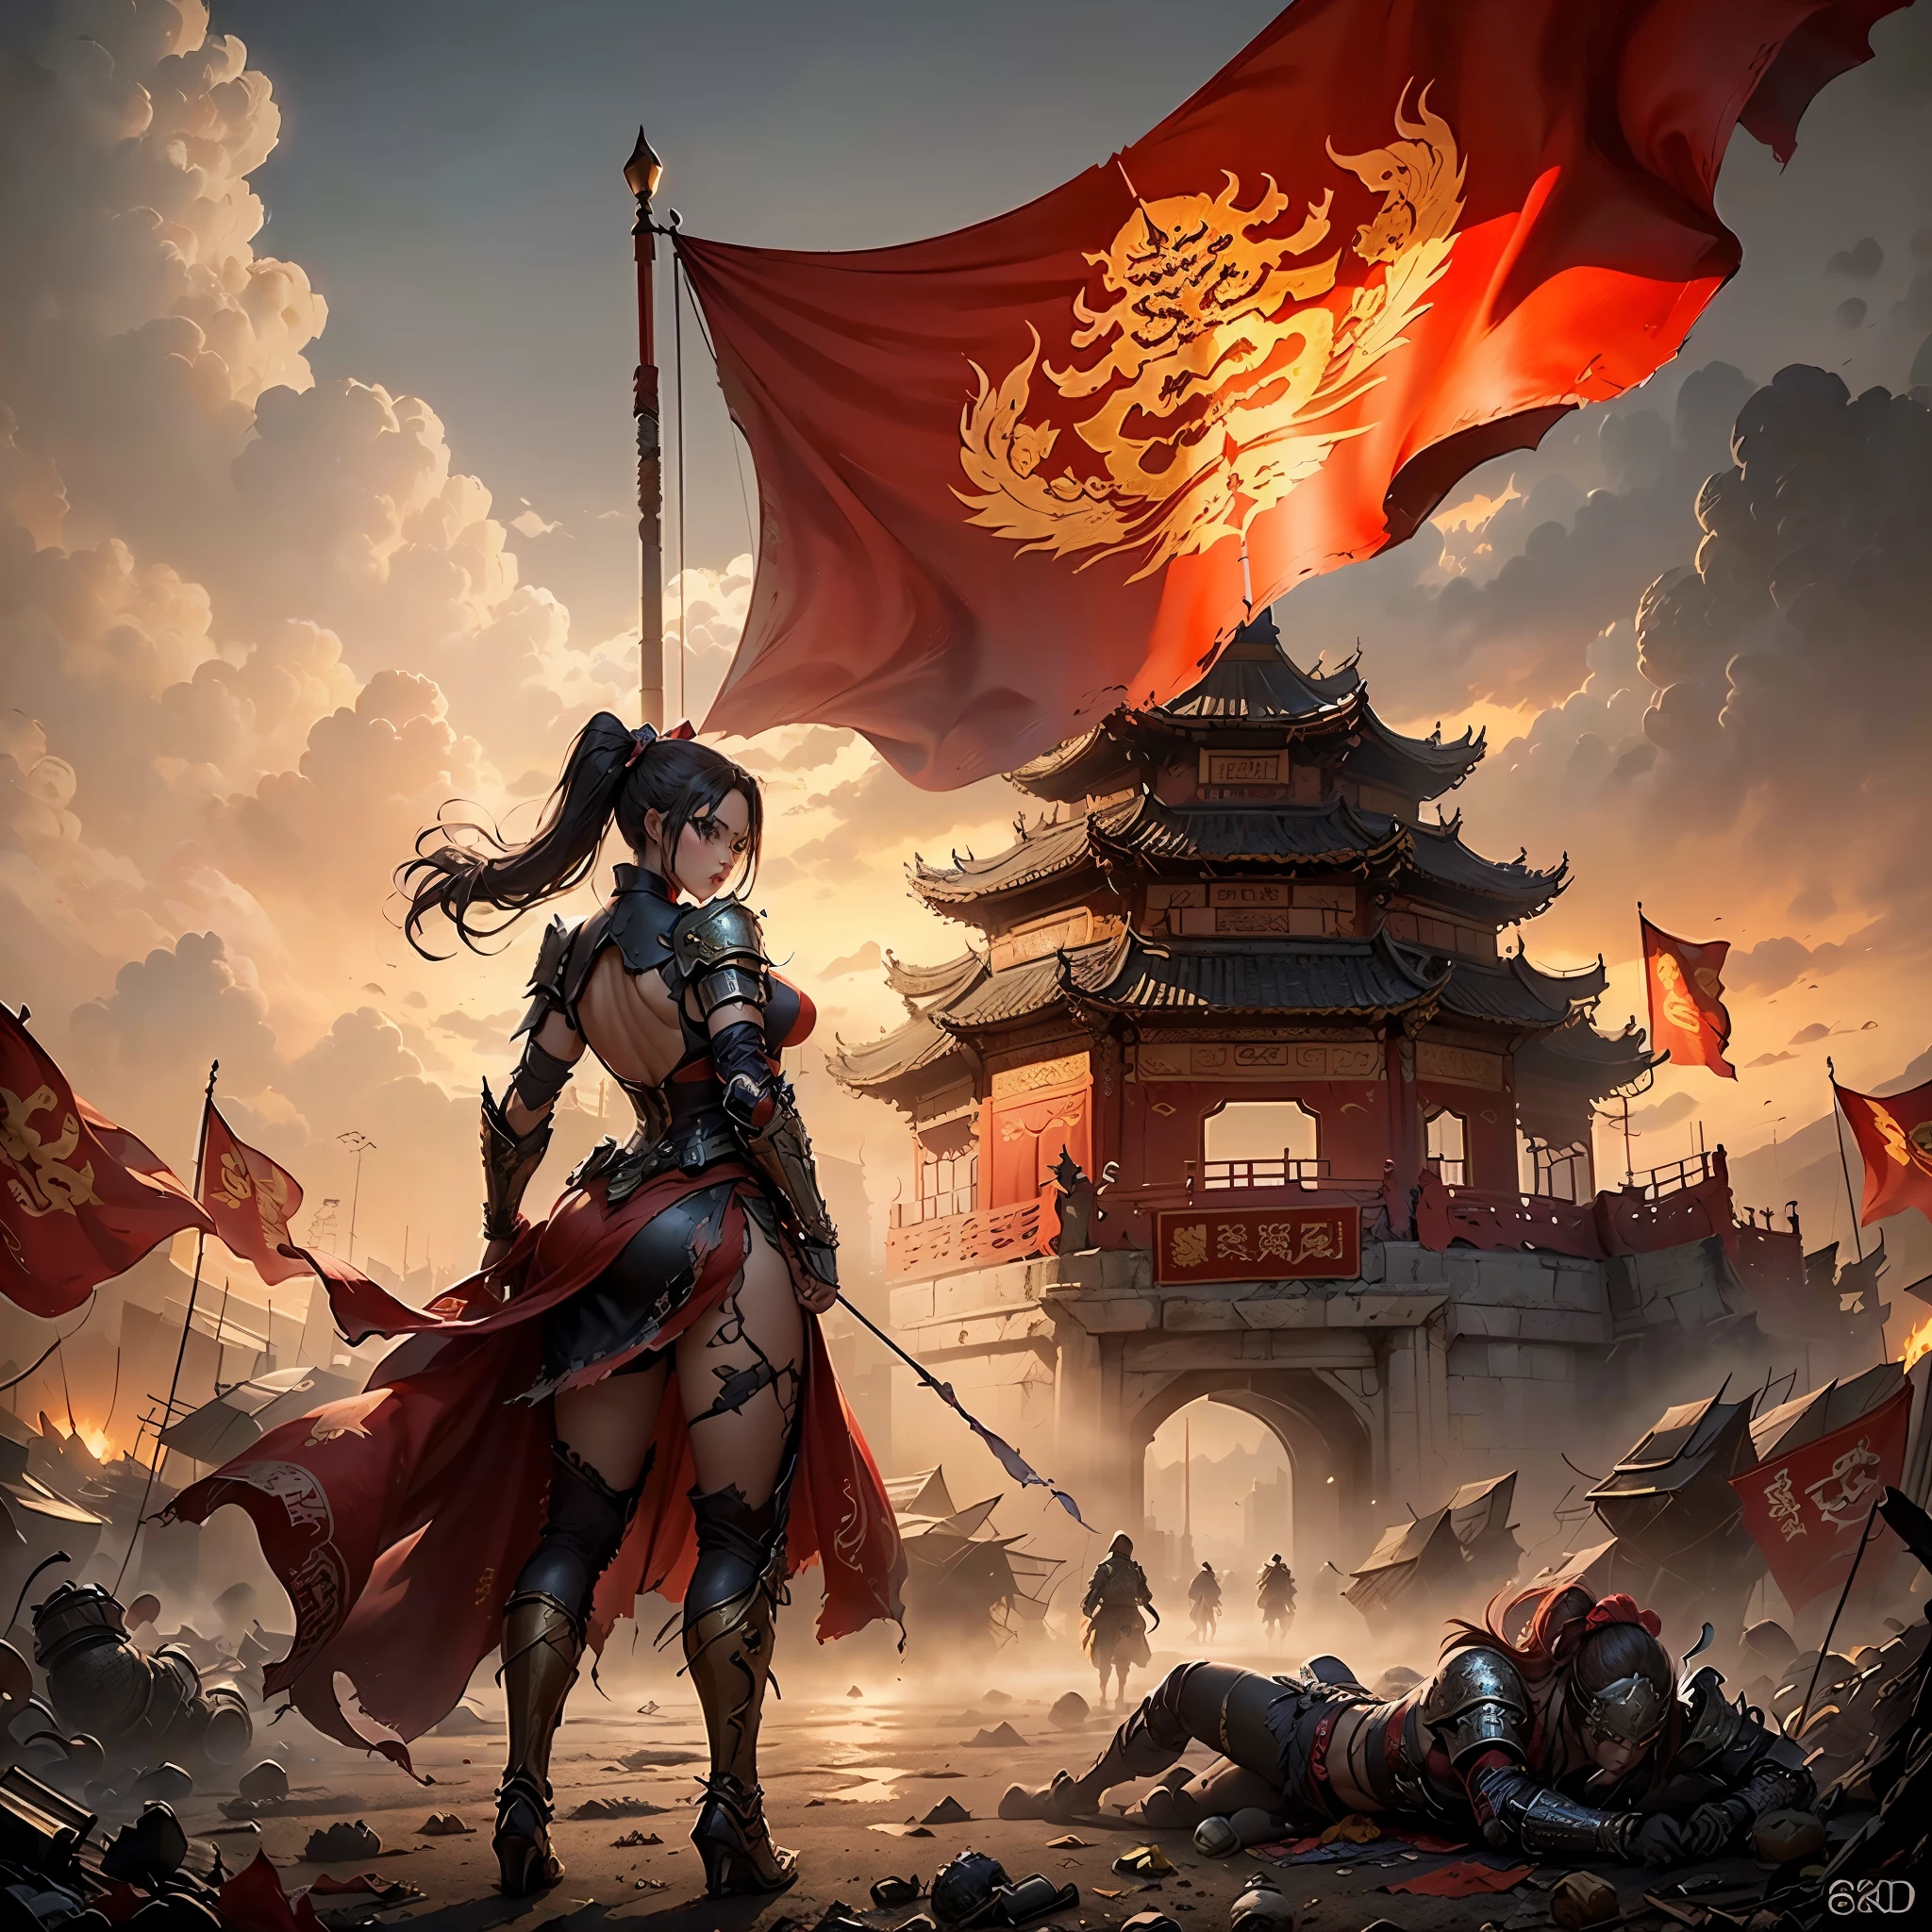 ((壮大な創造，中国の古代戦場，鎧を着た女性がぼろぼろになった赤い旗を持っている，至る所に死体，豊富なシーン詳細，包囲，遠くに高い城門が見える))，((8K+超高解像度+ウルトラHD+傑作+詳細)),(ハイポニーテール)